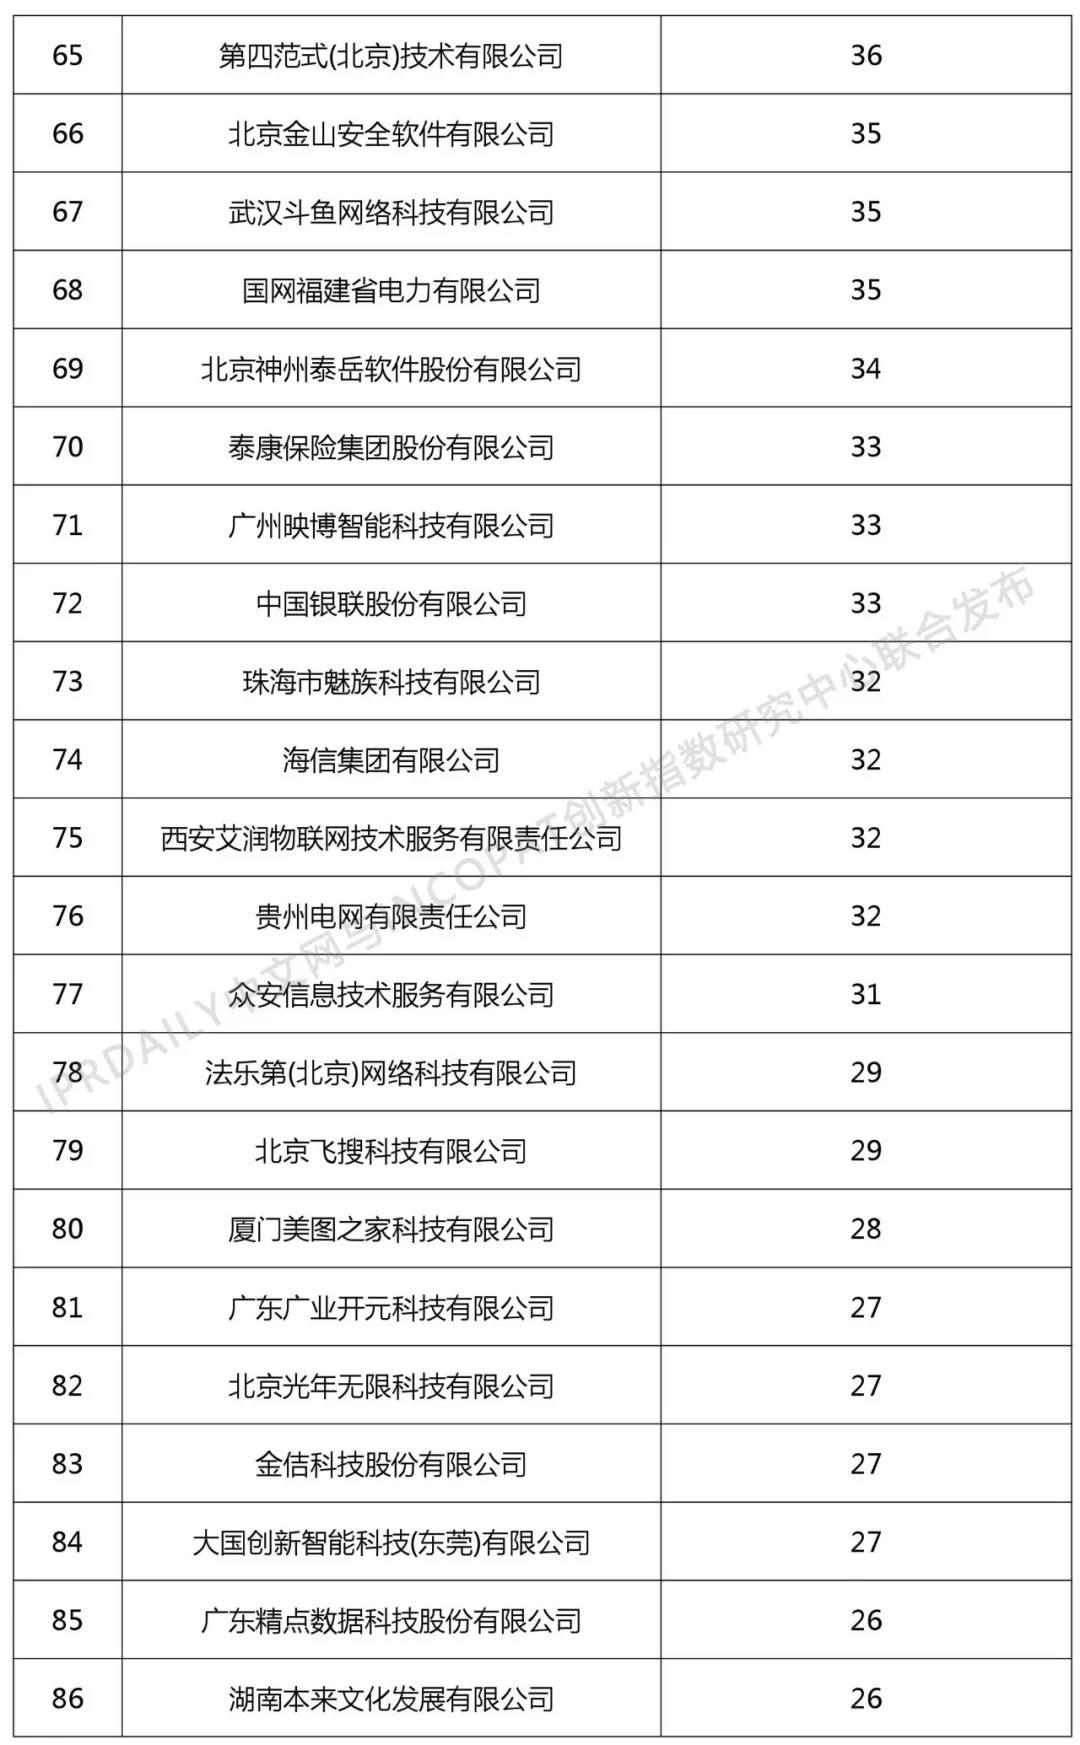 2018年中国企业人工智能技术发明专利排行榜（TOP100）